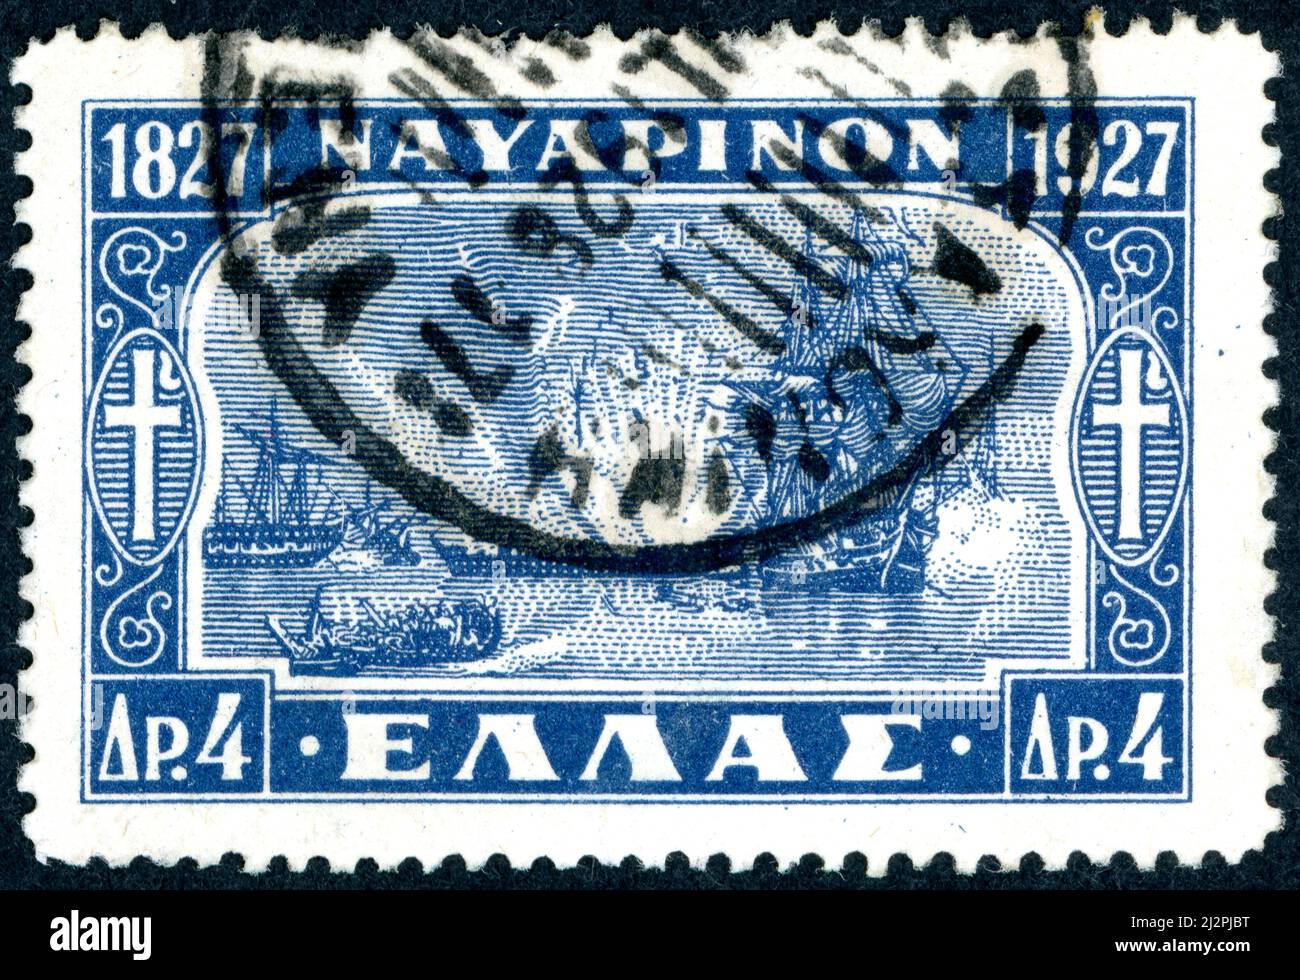 GRÈCE - VERS 1927 : timbre imprimé en Grèce, consacré au centenaire de la bataille navale de Navarino, vers 1927 Banque D'Images